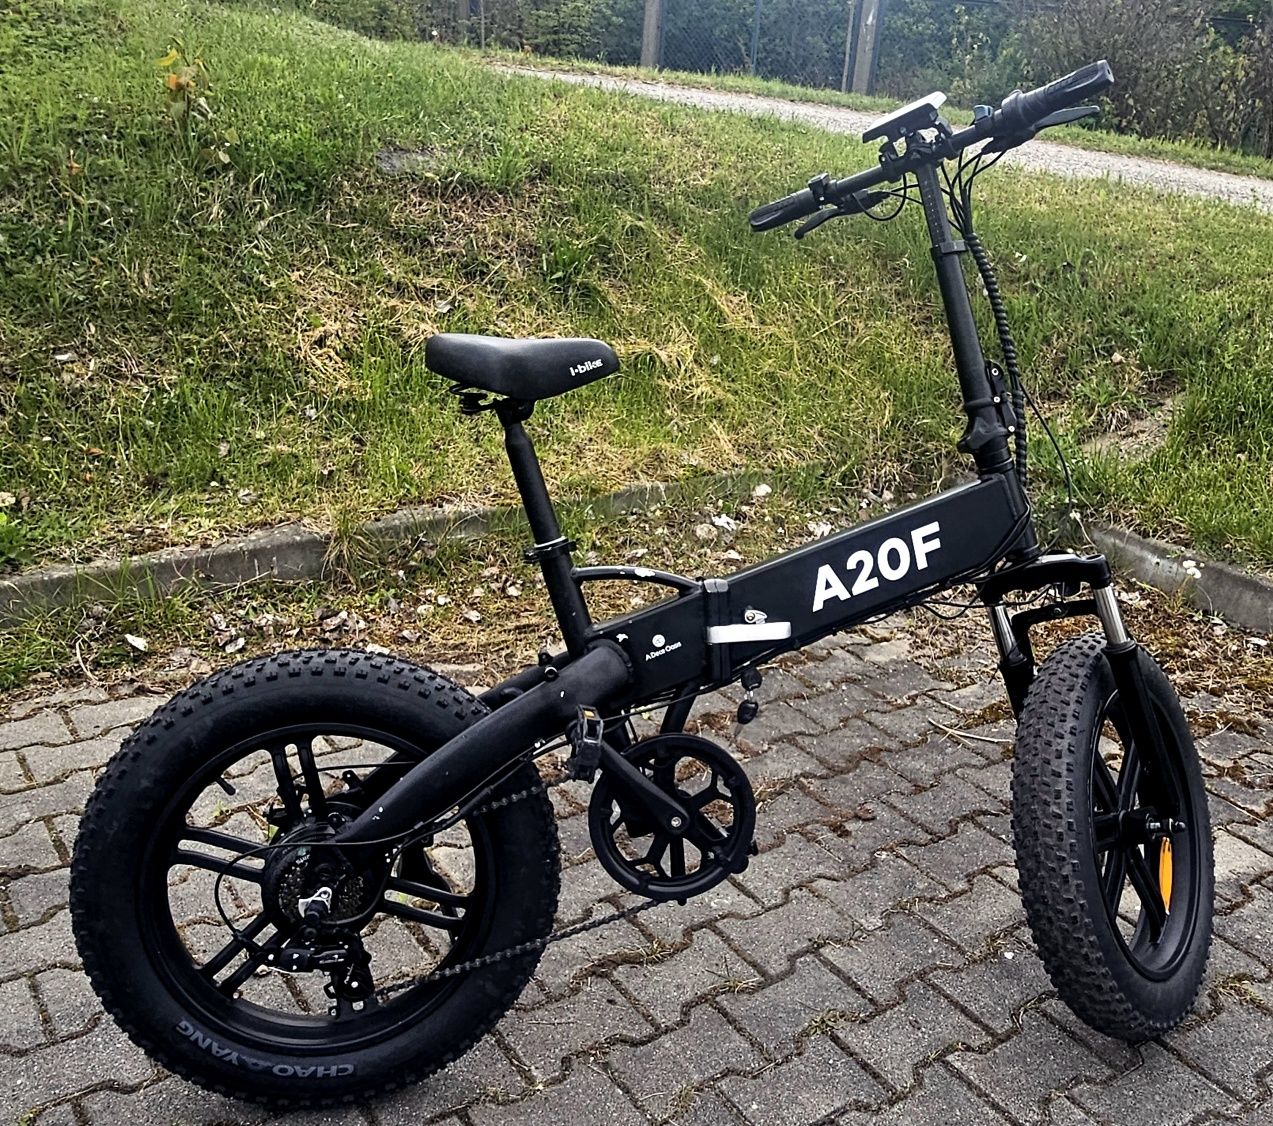 Rower elektryczny składak Fatbike Ado A20F manetka